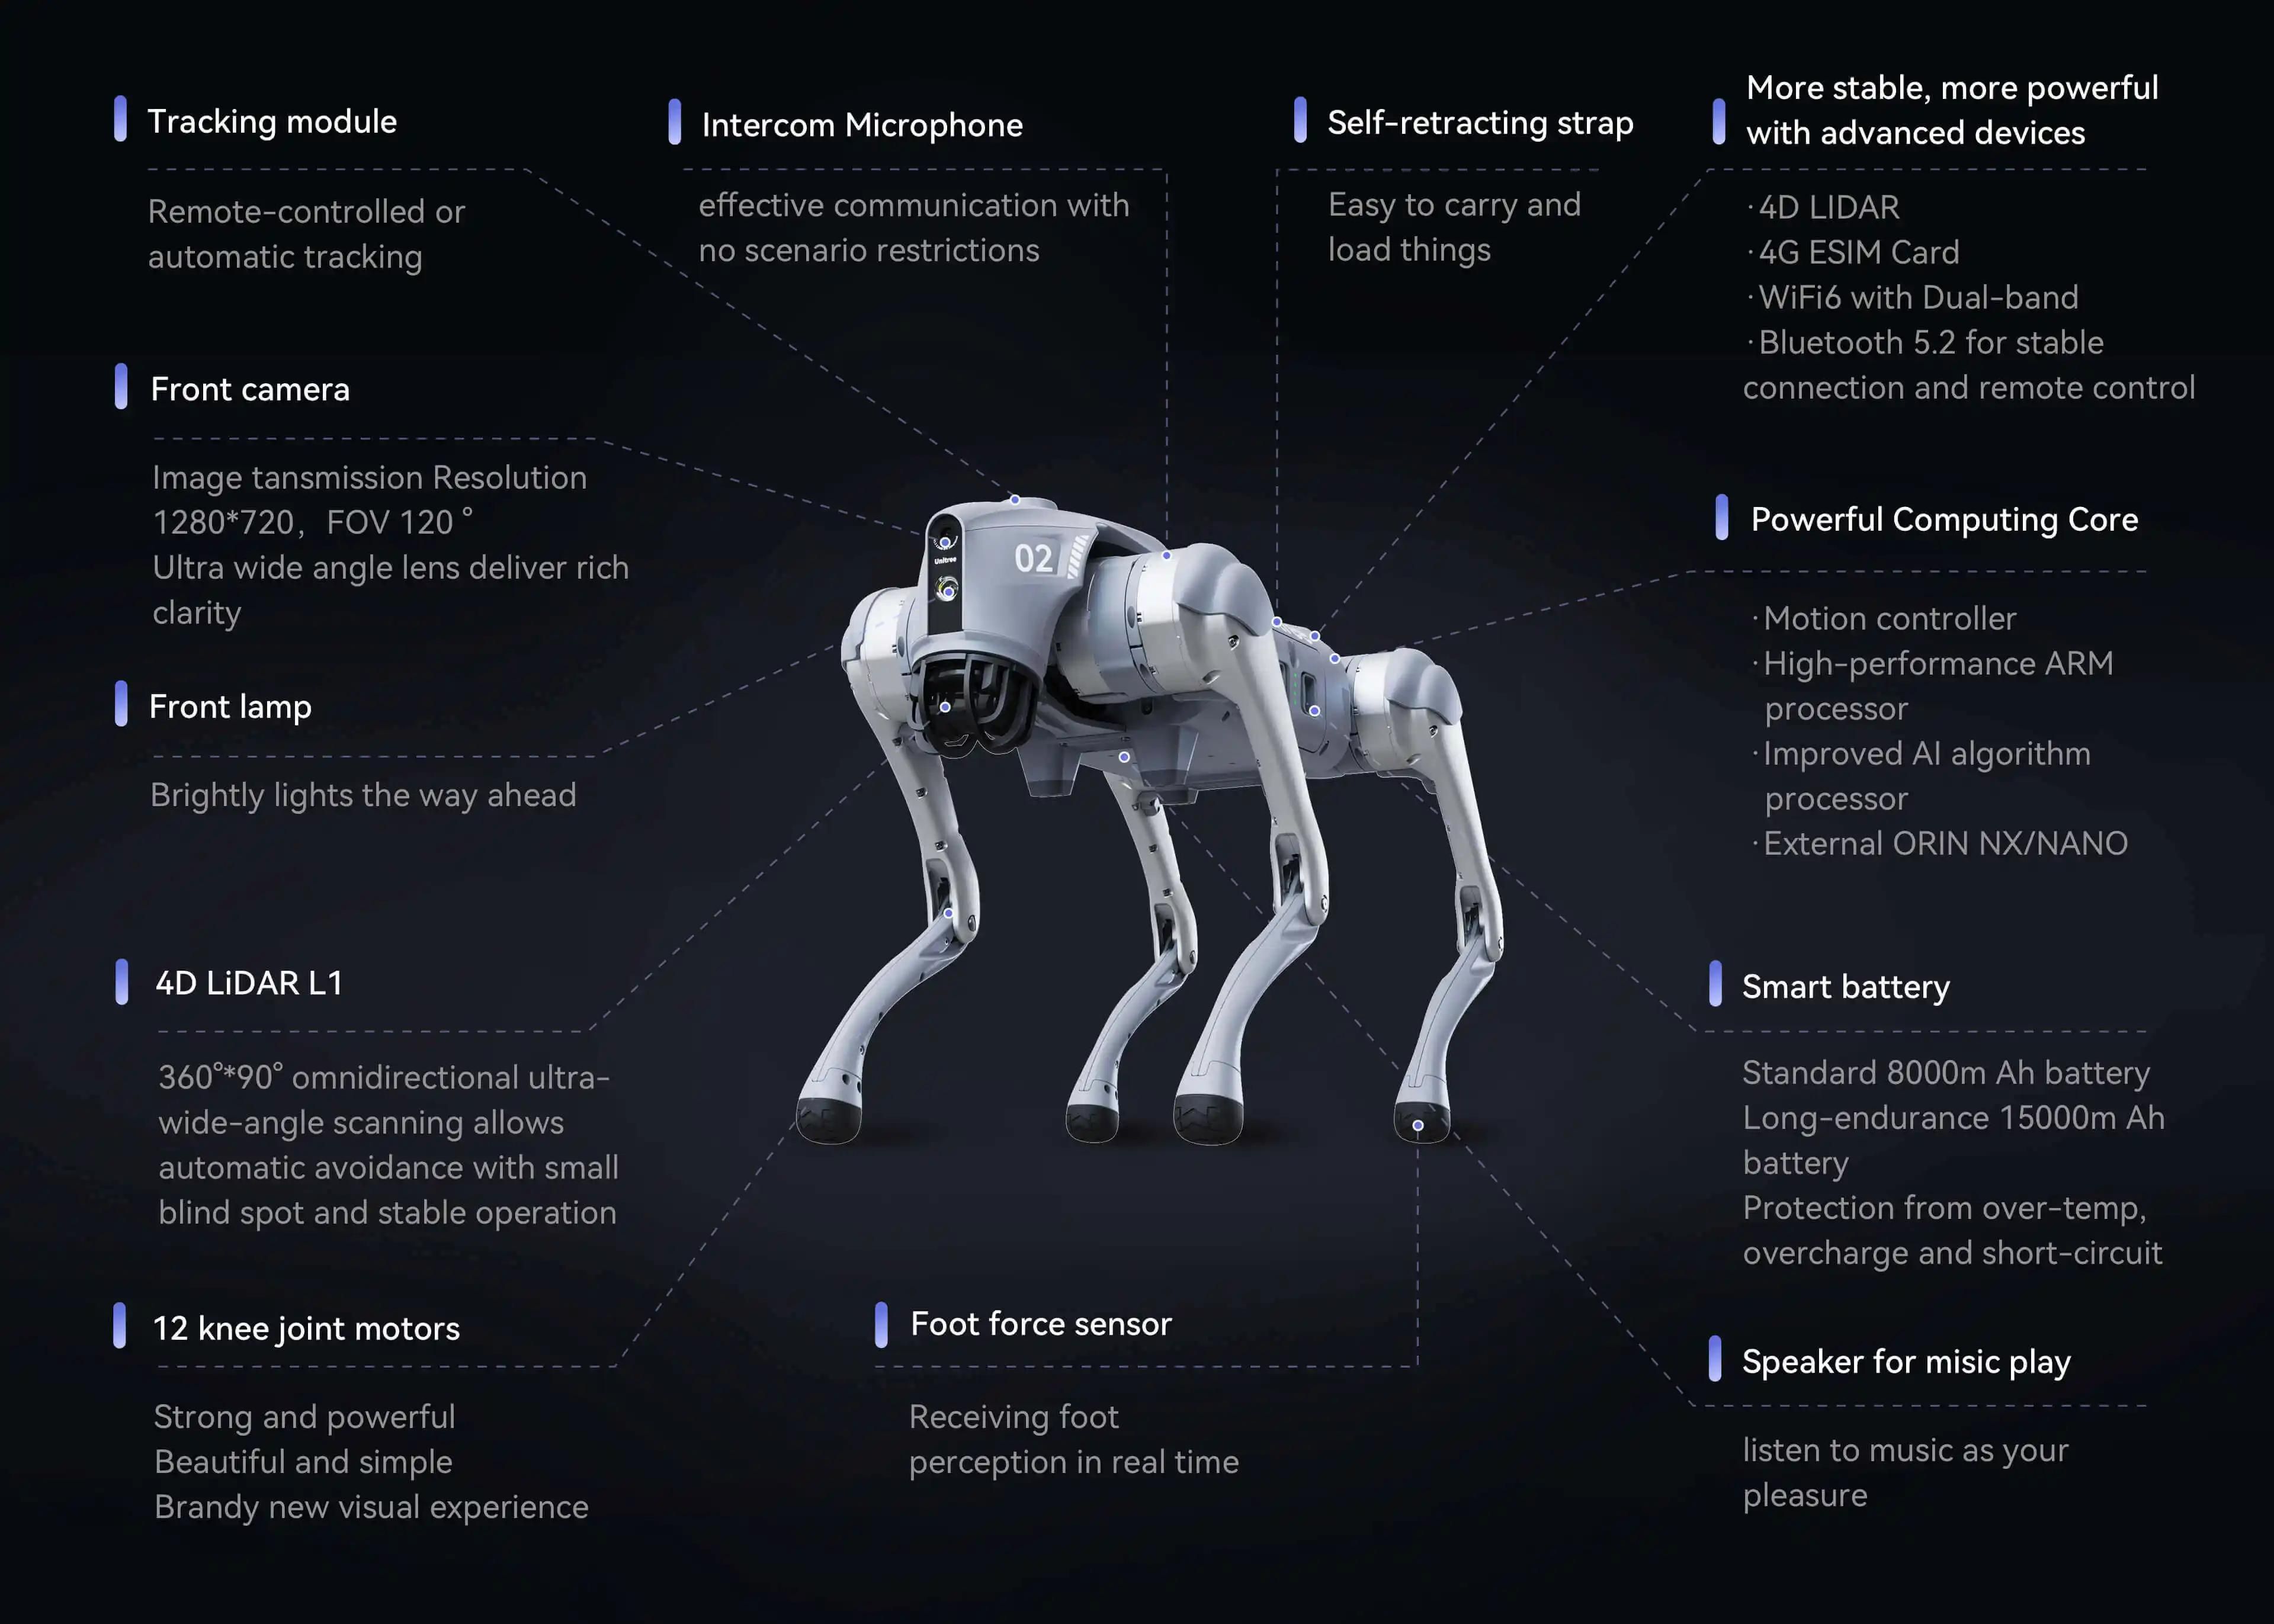 Les caractéristiques clés du Robot Go2